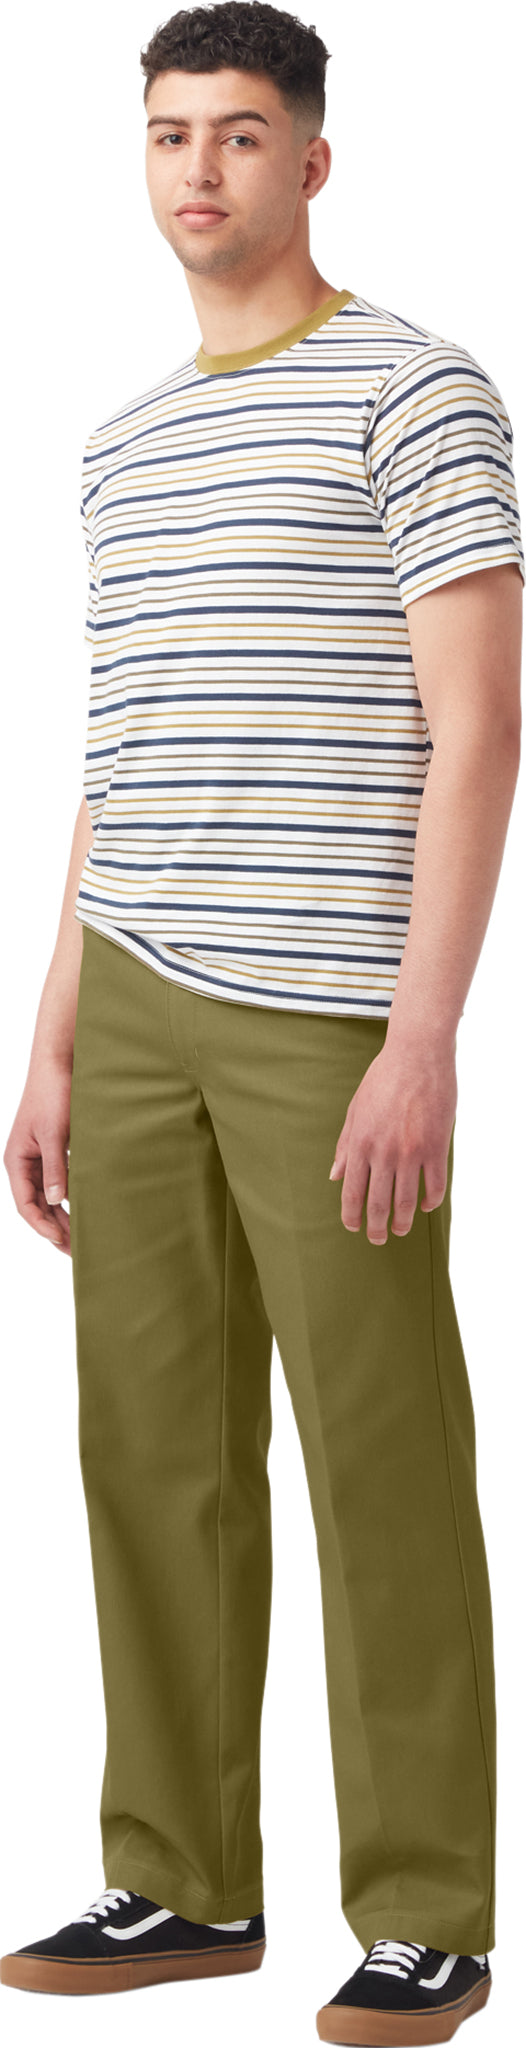 DODOING Men's Outdoor Pants Lightweight Work Trousers Combat Cargo Work  Pants with Elastic Waist Hiking Fishing Outdoor Pants - Walmart.com